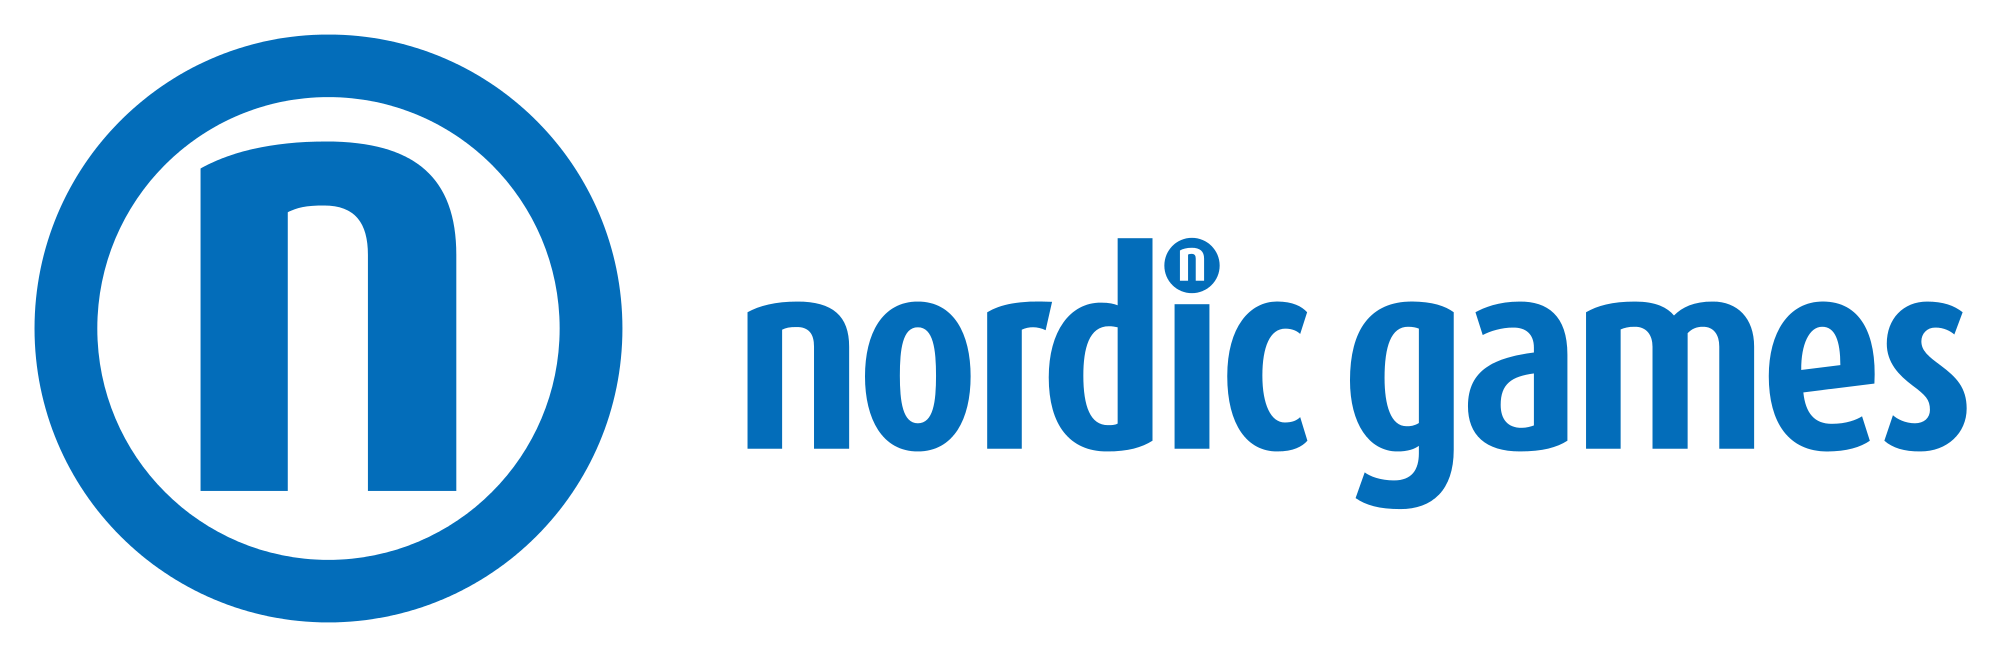 Nordicgames-logo.svg